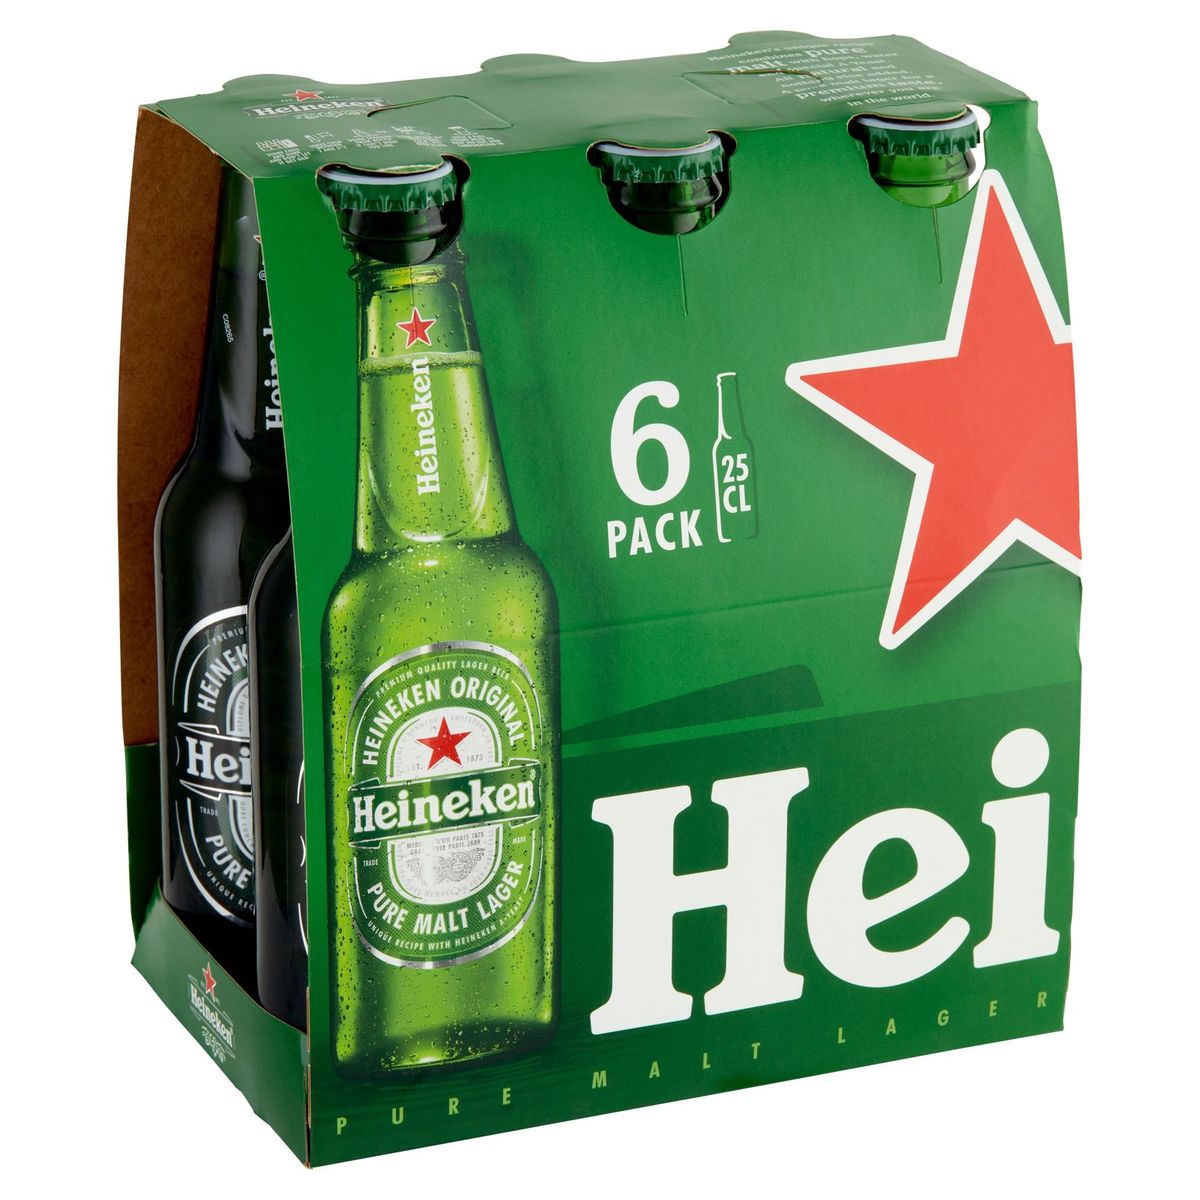 Heineken Blond bier Pils 5% ALC 6 x 25 cl Fles